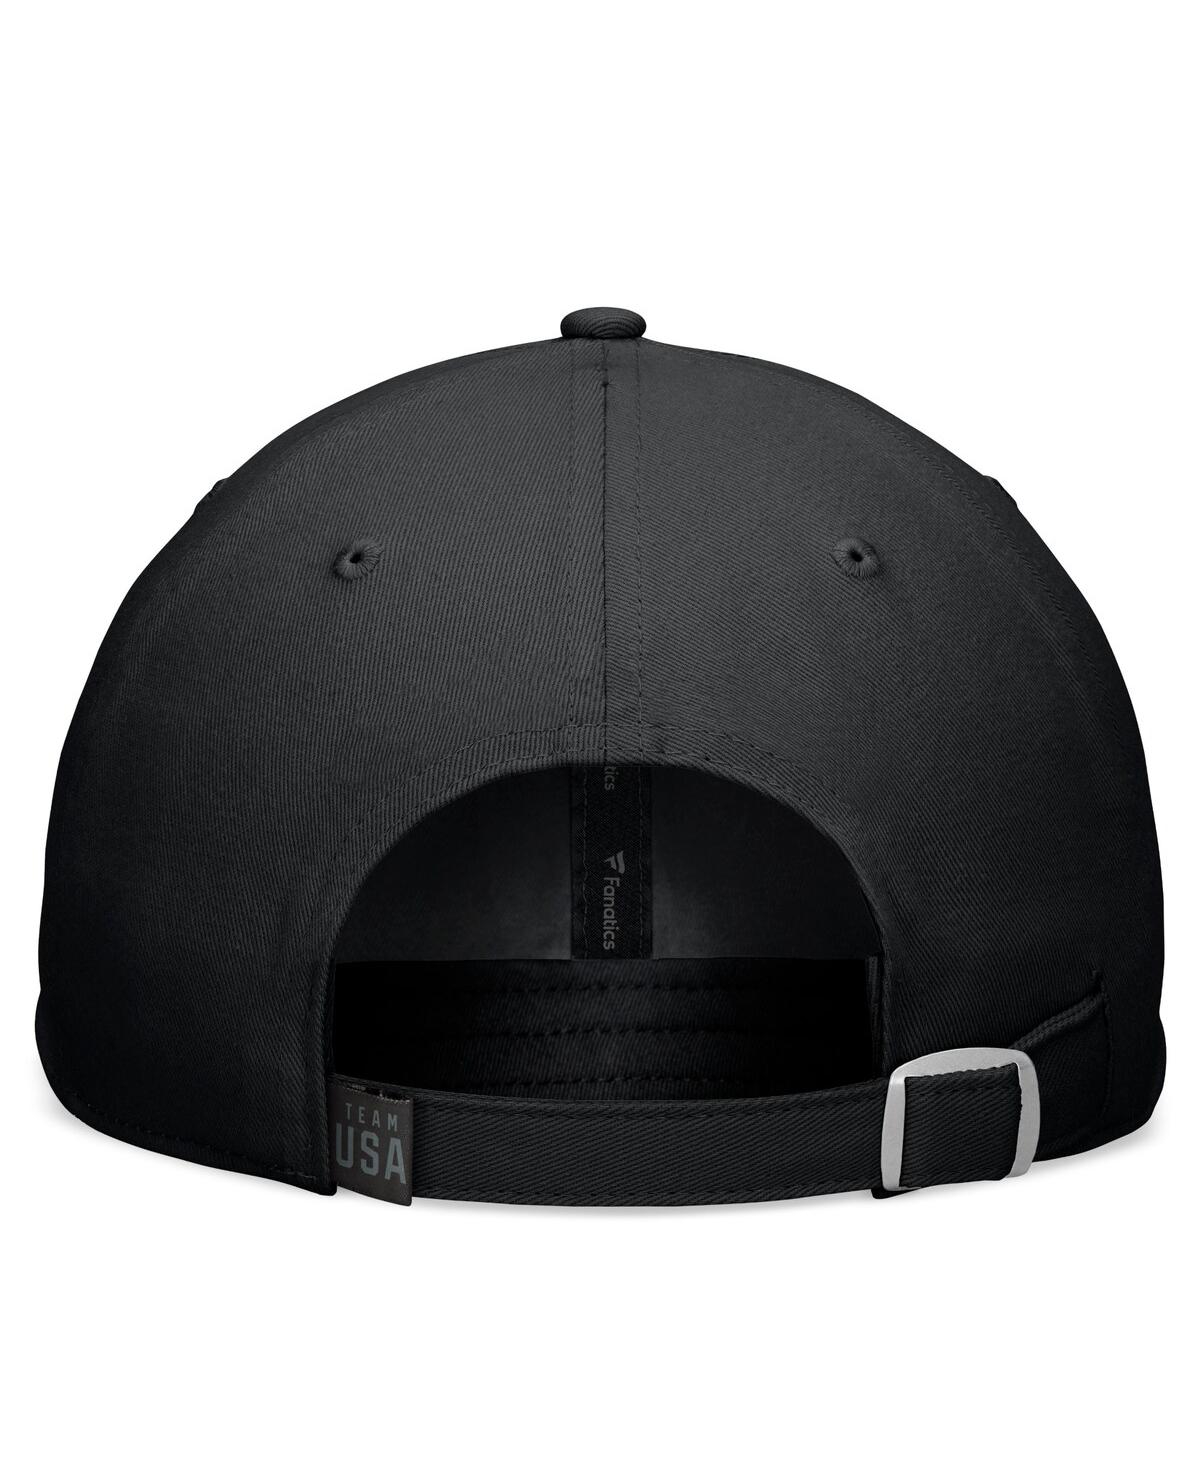 Shop Fanatics Branded Men's Black Team Usa Blackout Adjustable Hat